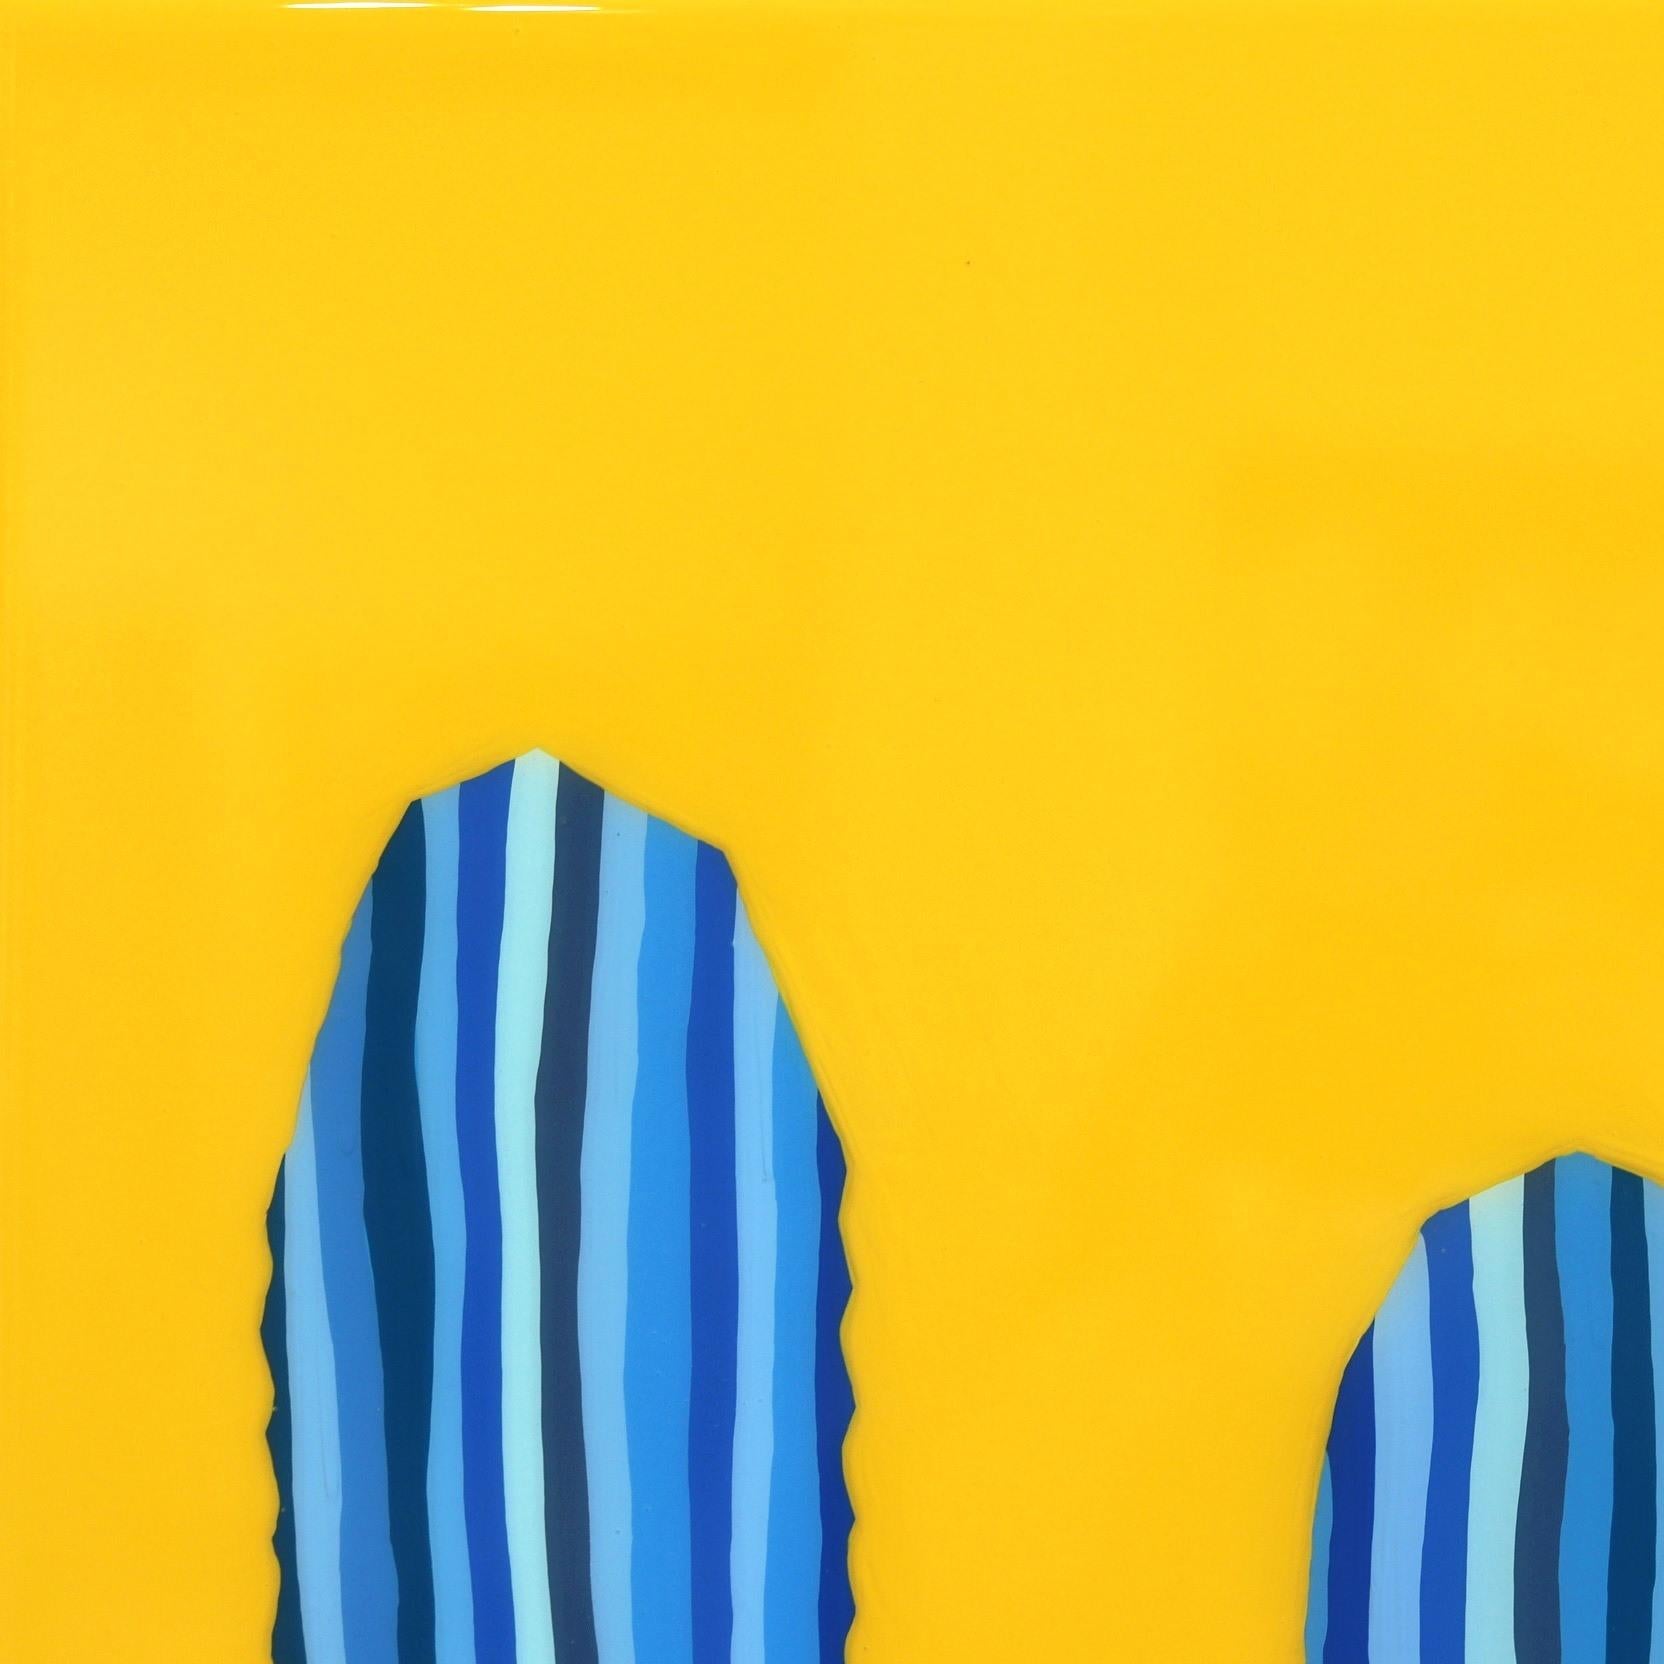 Mañana Amarilla- Peinture pop art de cactus d'un jaune bleu vibrant inspirée du sud-ouest - Minimaliste Painting par Will Beger